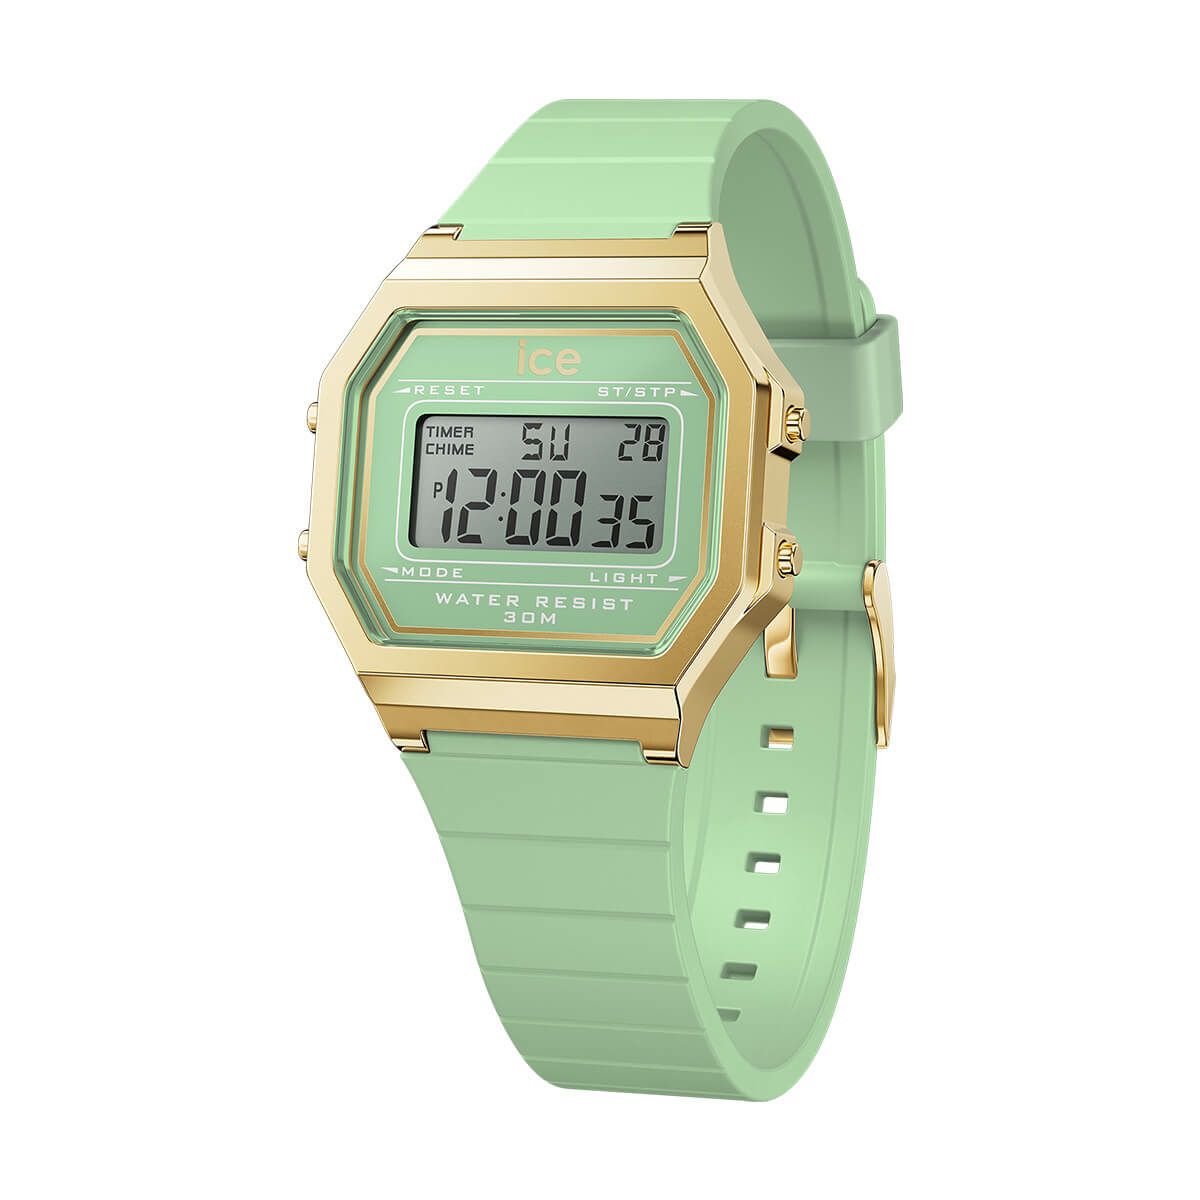 腕時計 デジタル ケース径32mm 3気圧防水 時刻 022060 ラグーングリーン ICE Watch アイスウォッチ ICE digit retro アイス デジットレトロ ユニセックス 小さめ 1